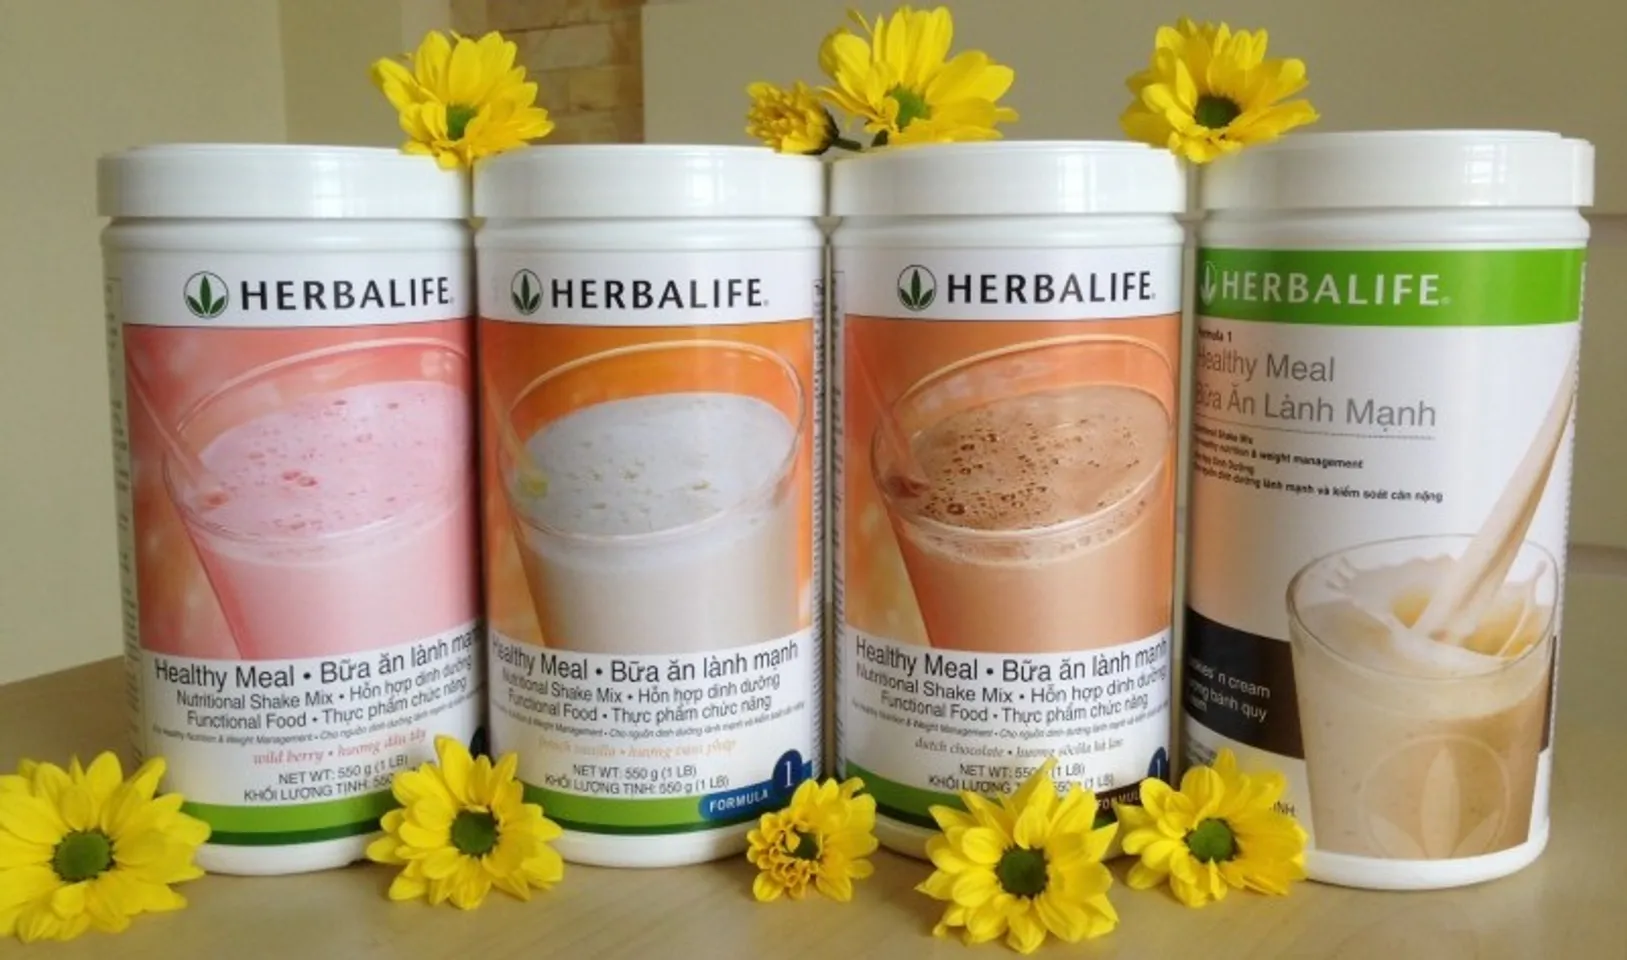 Sữa Herbalife Healthy Meal F1 có 4 vị cho bạn lựa chọn theo khẩu vị cá nhân